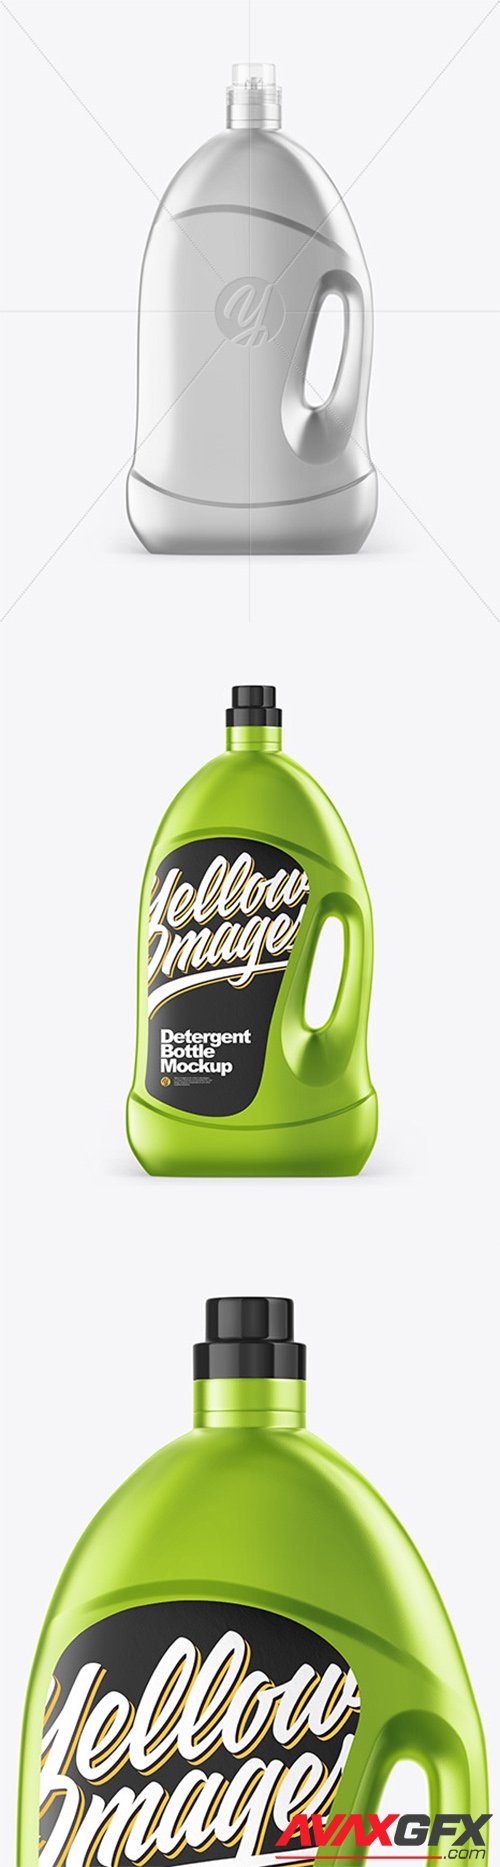 Metallic Detergent Bottle Mockup 64263